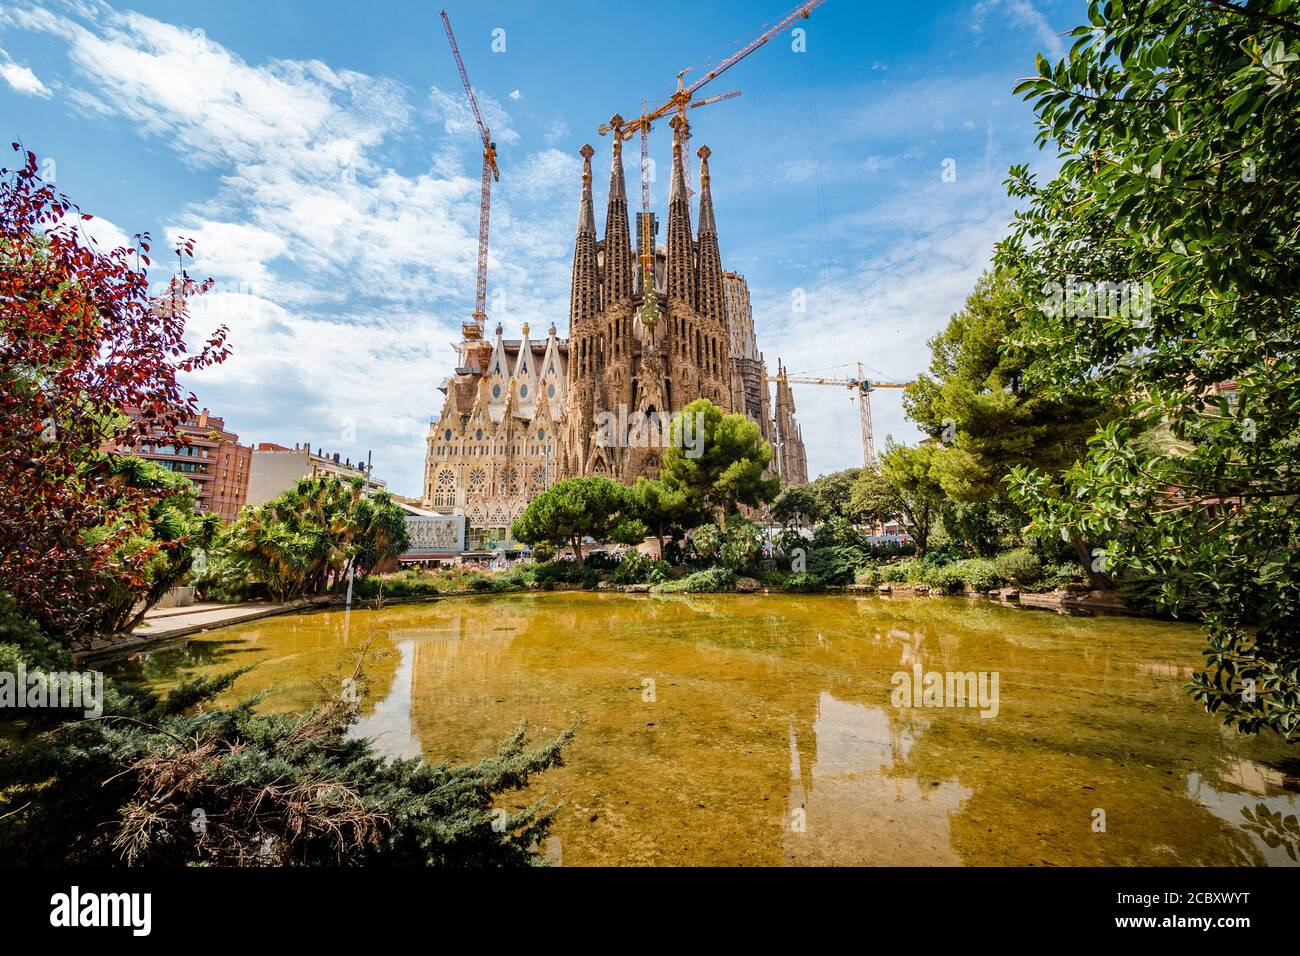 Barcelona, Spanien - 21. August 2017: Architektonisches Wahrzeichen Sagrada Familia Basilica, eine große römisch-katholische Kirche von Antoni Gaudi in Barcelo entworfen Stockfoto